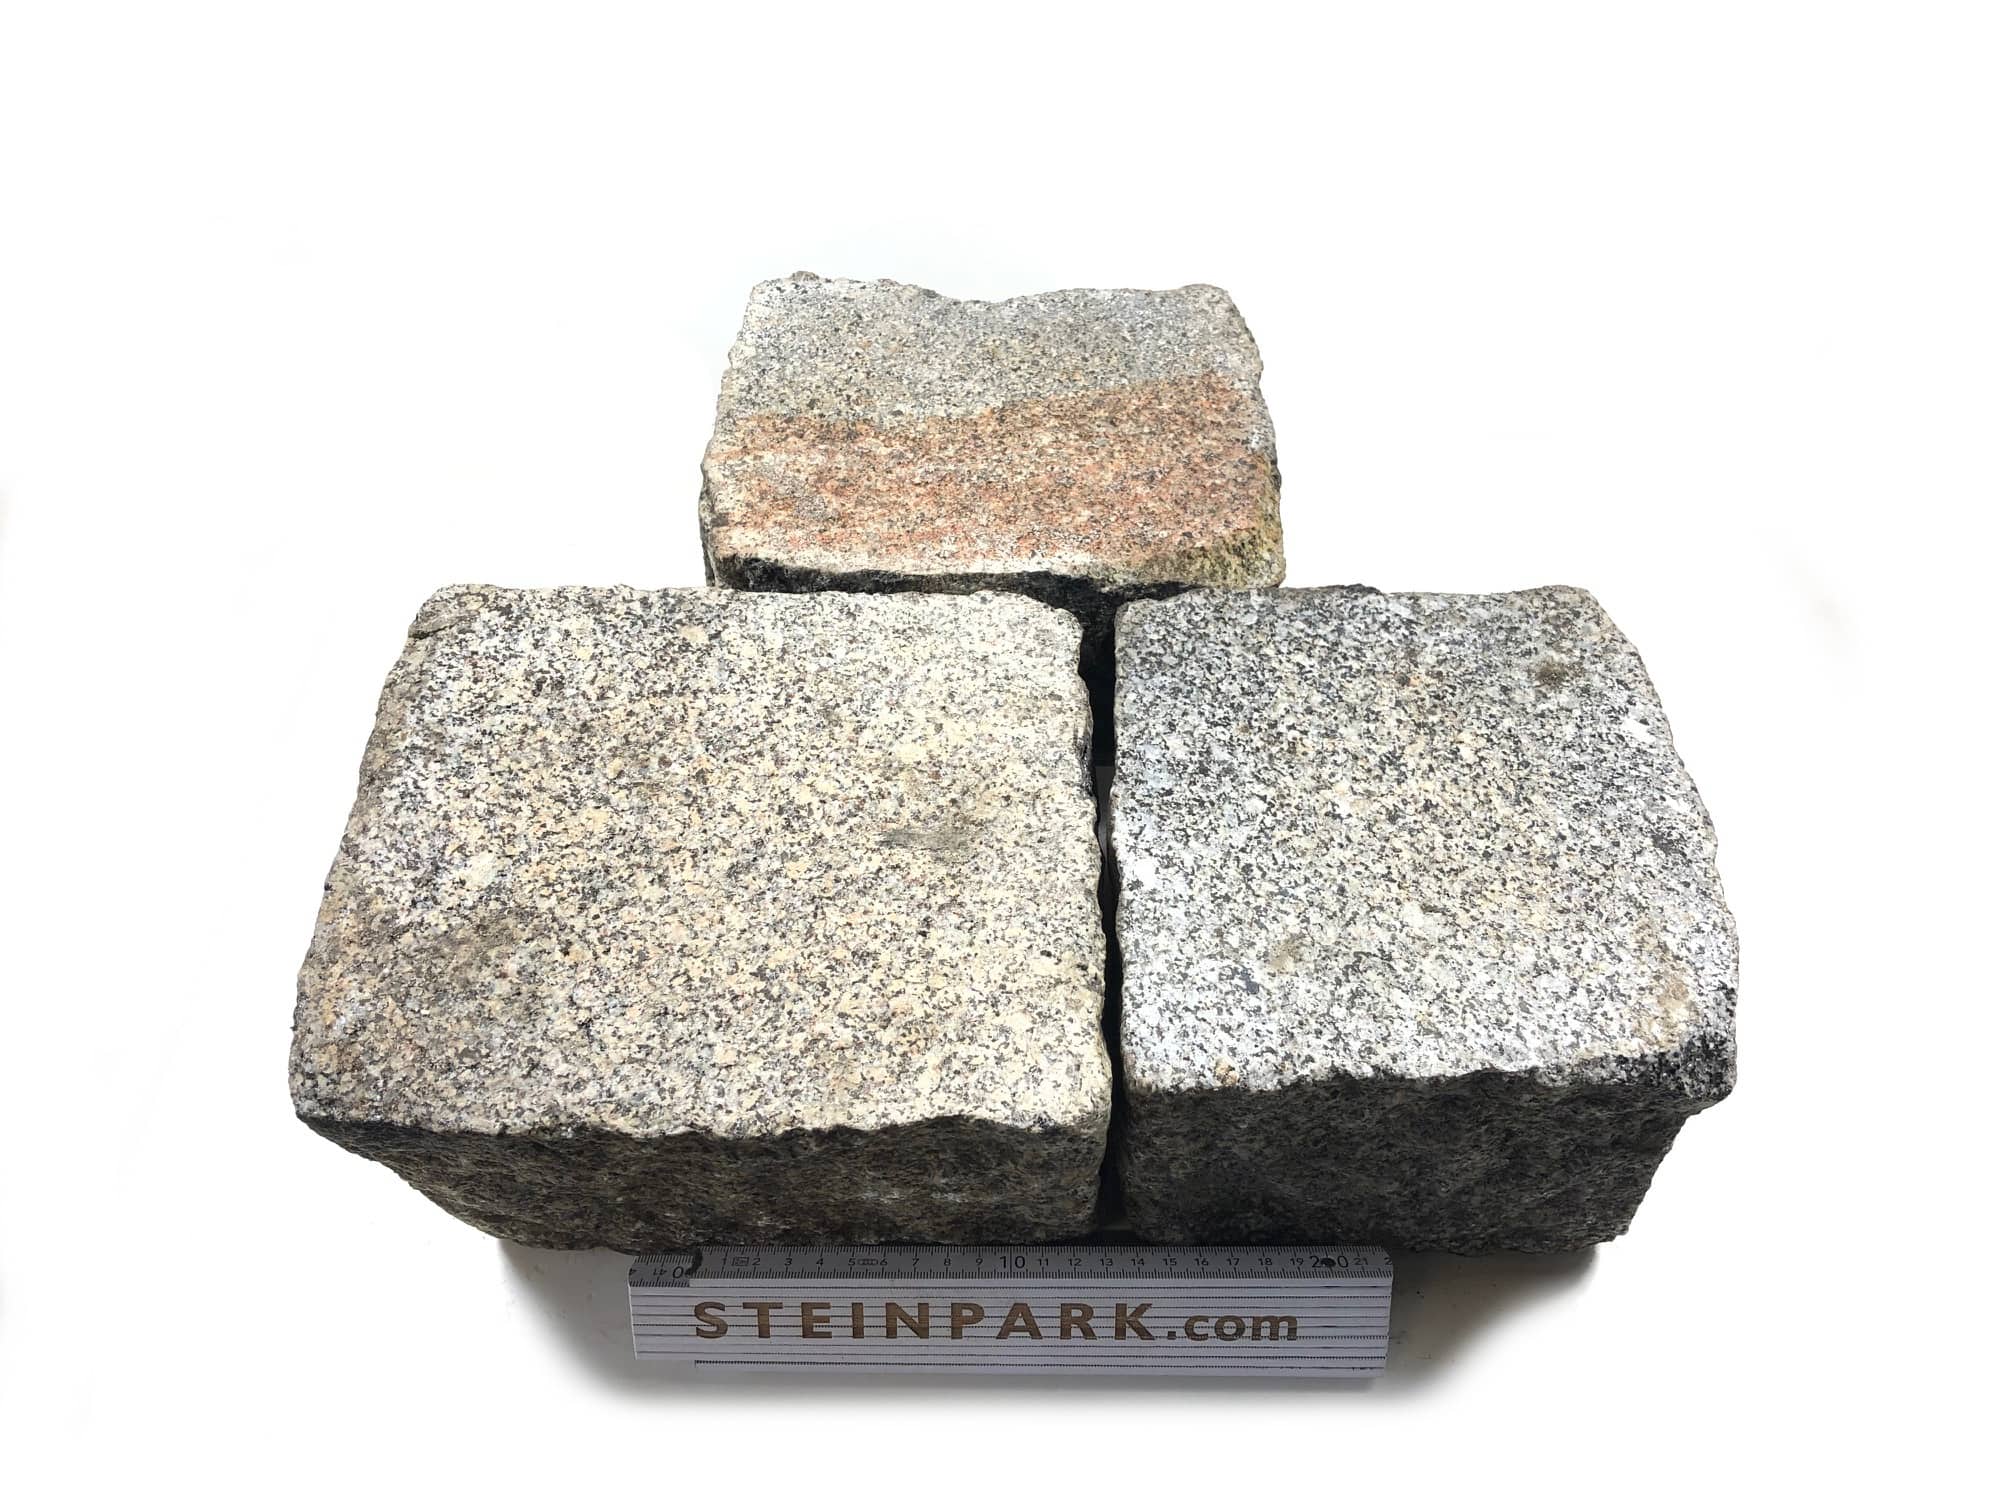 Edel Granit Pflasterplatte 12-13 cm grau regelmäßig